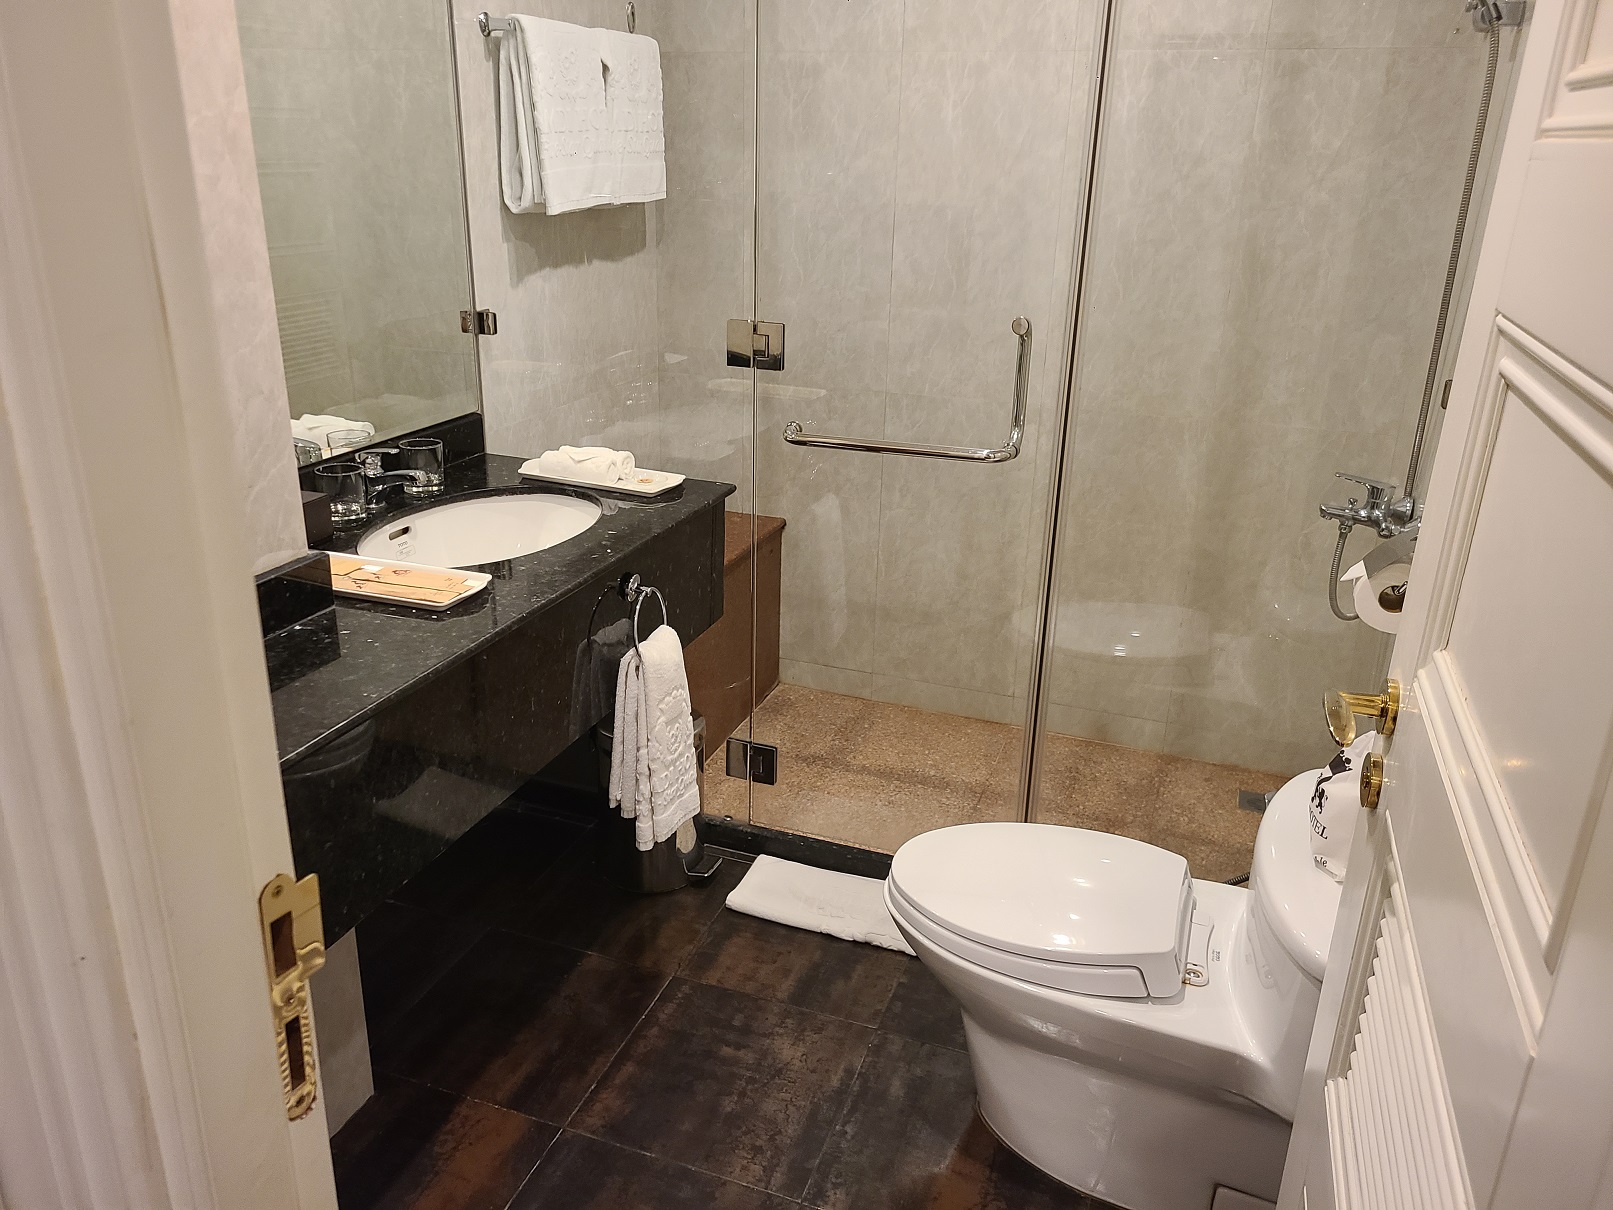 삼디호텔 화장실. 사워실이 갖춰져 있고&#44; 어매니티도 필요한 것은 웬만큼 다 구비되어 있었다. 수건도 샤워용 2개가 있고&#44; 핸드 타월은 따로 있다.